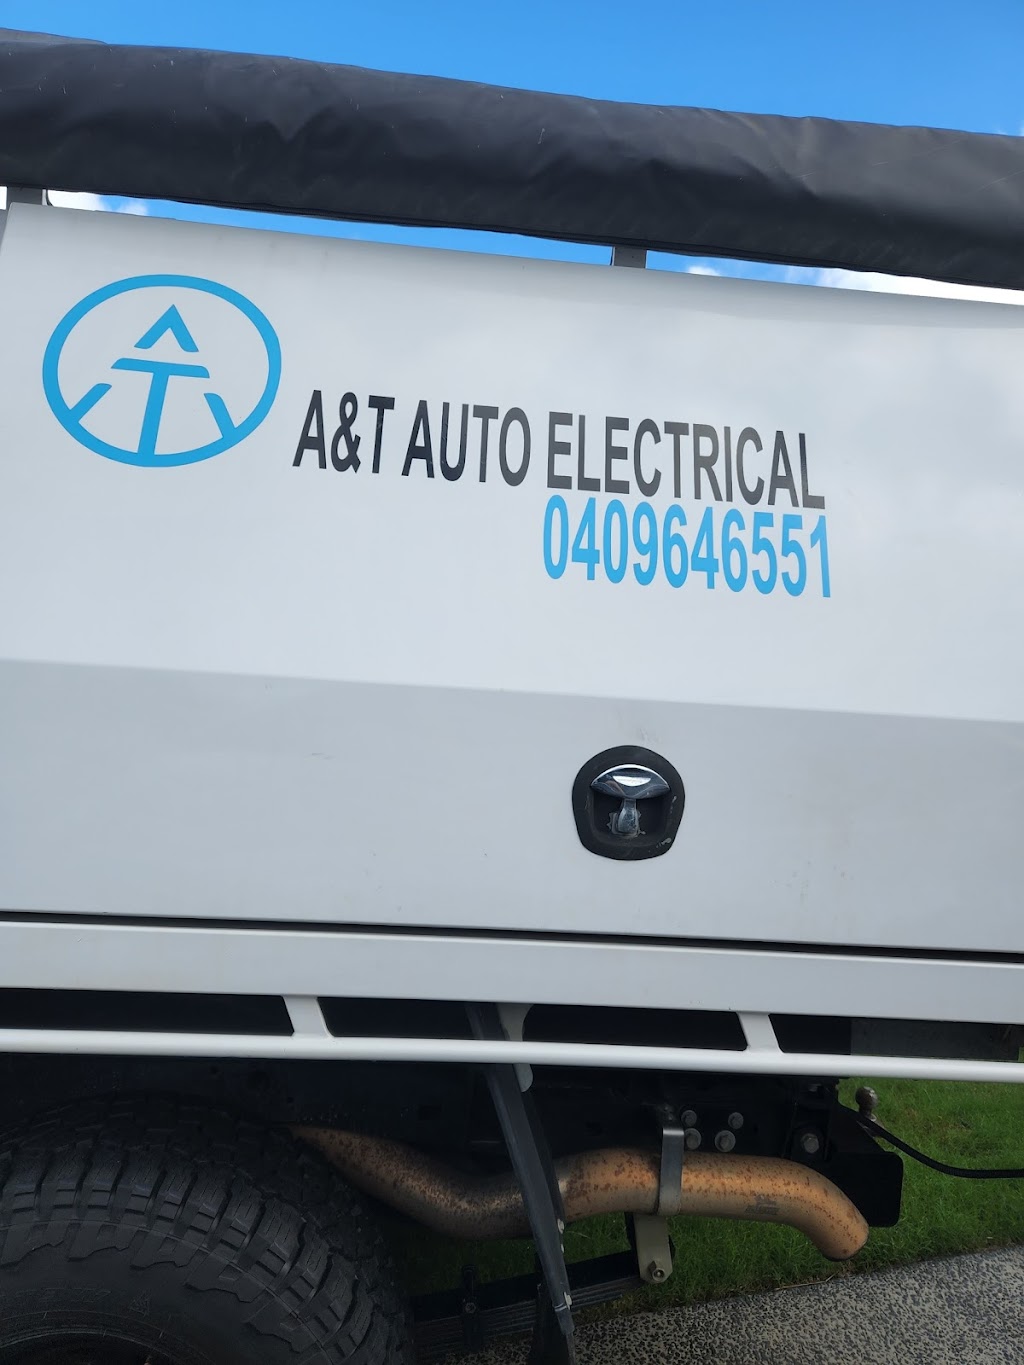 A&T Auto Electrical | car repair | 16 Alistair St, Nirimba QLD 4551, Australia | 0409646551 OR +61 409 646 551